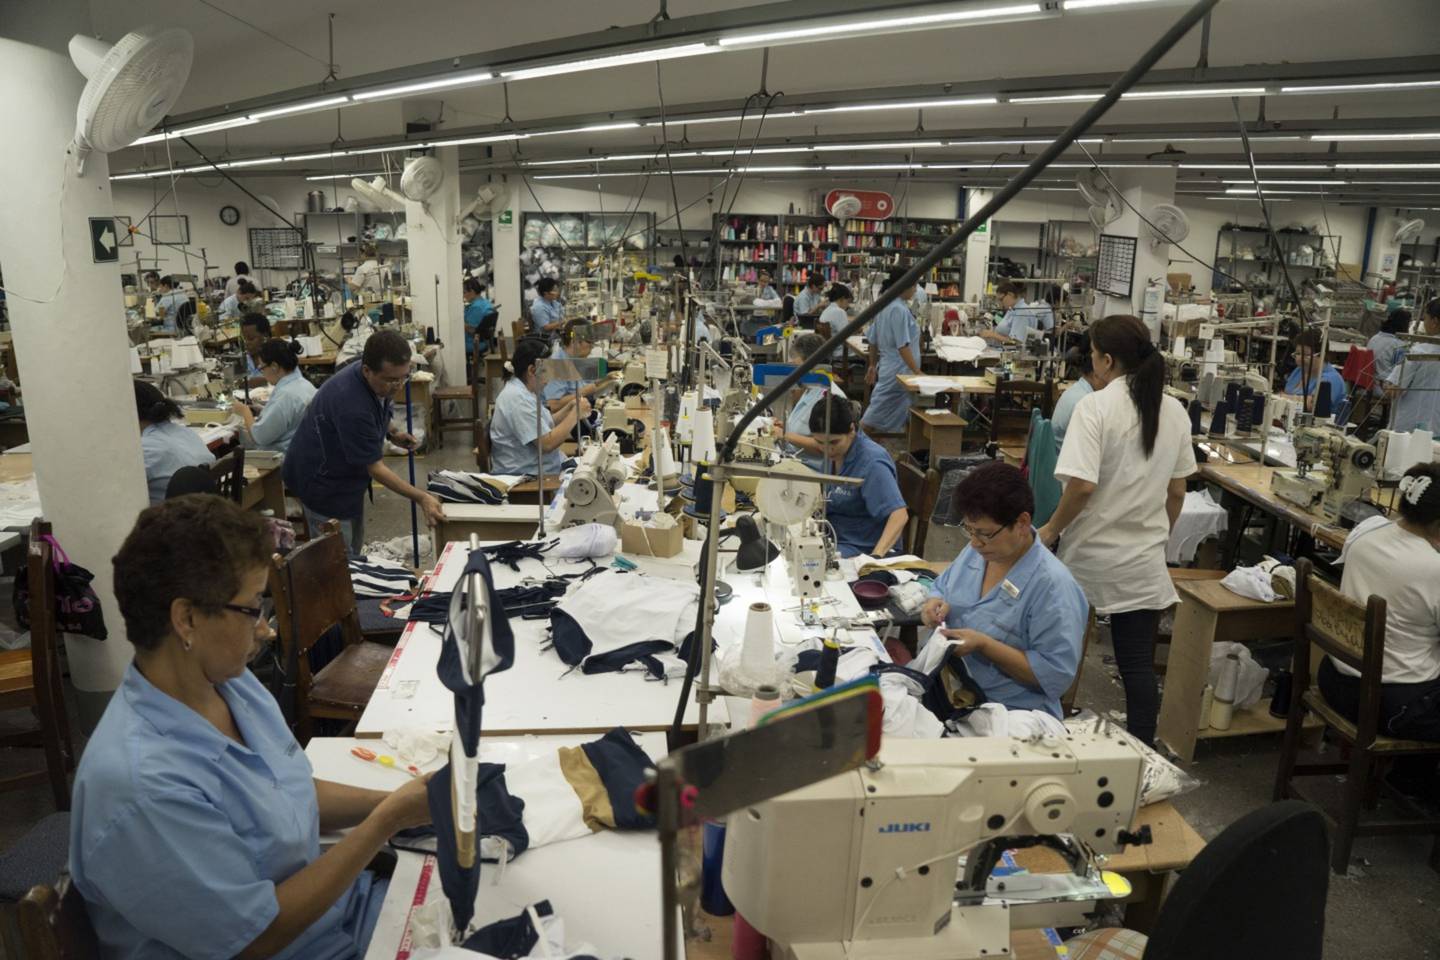 Los trabajadores confeccionan ropa en la fábrica Touche en Medellín, Colombia, el lunes 25 de agosto de 2014.